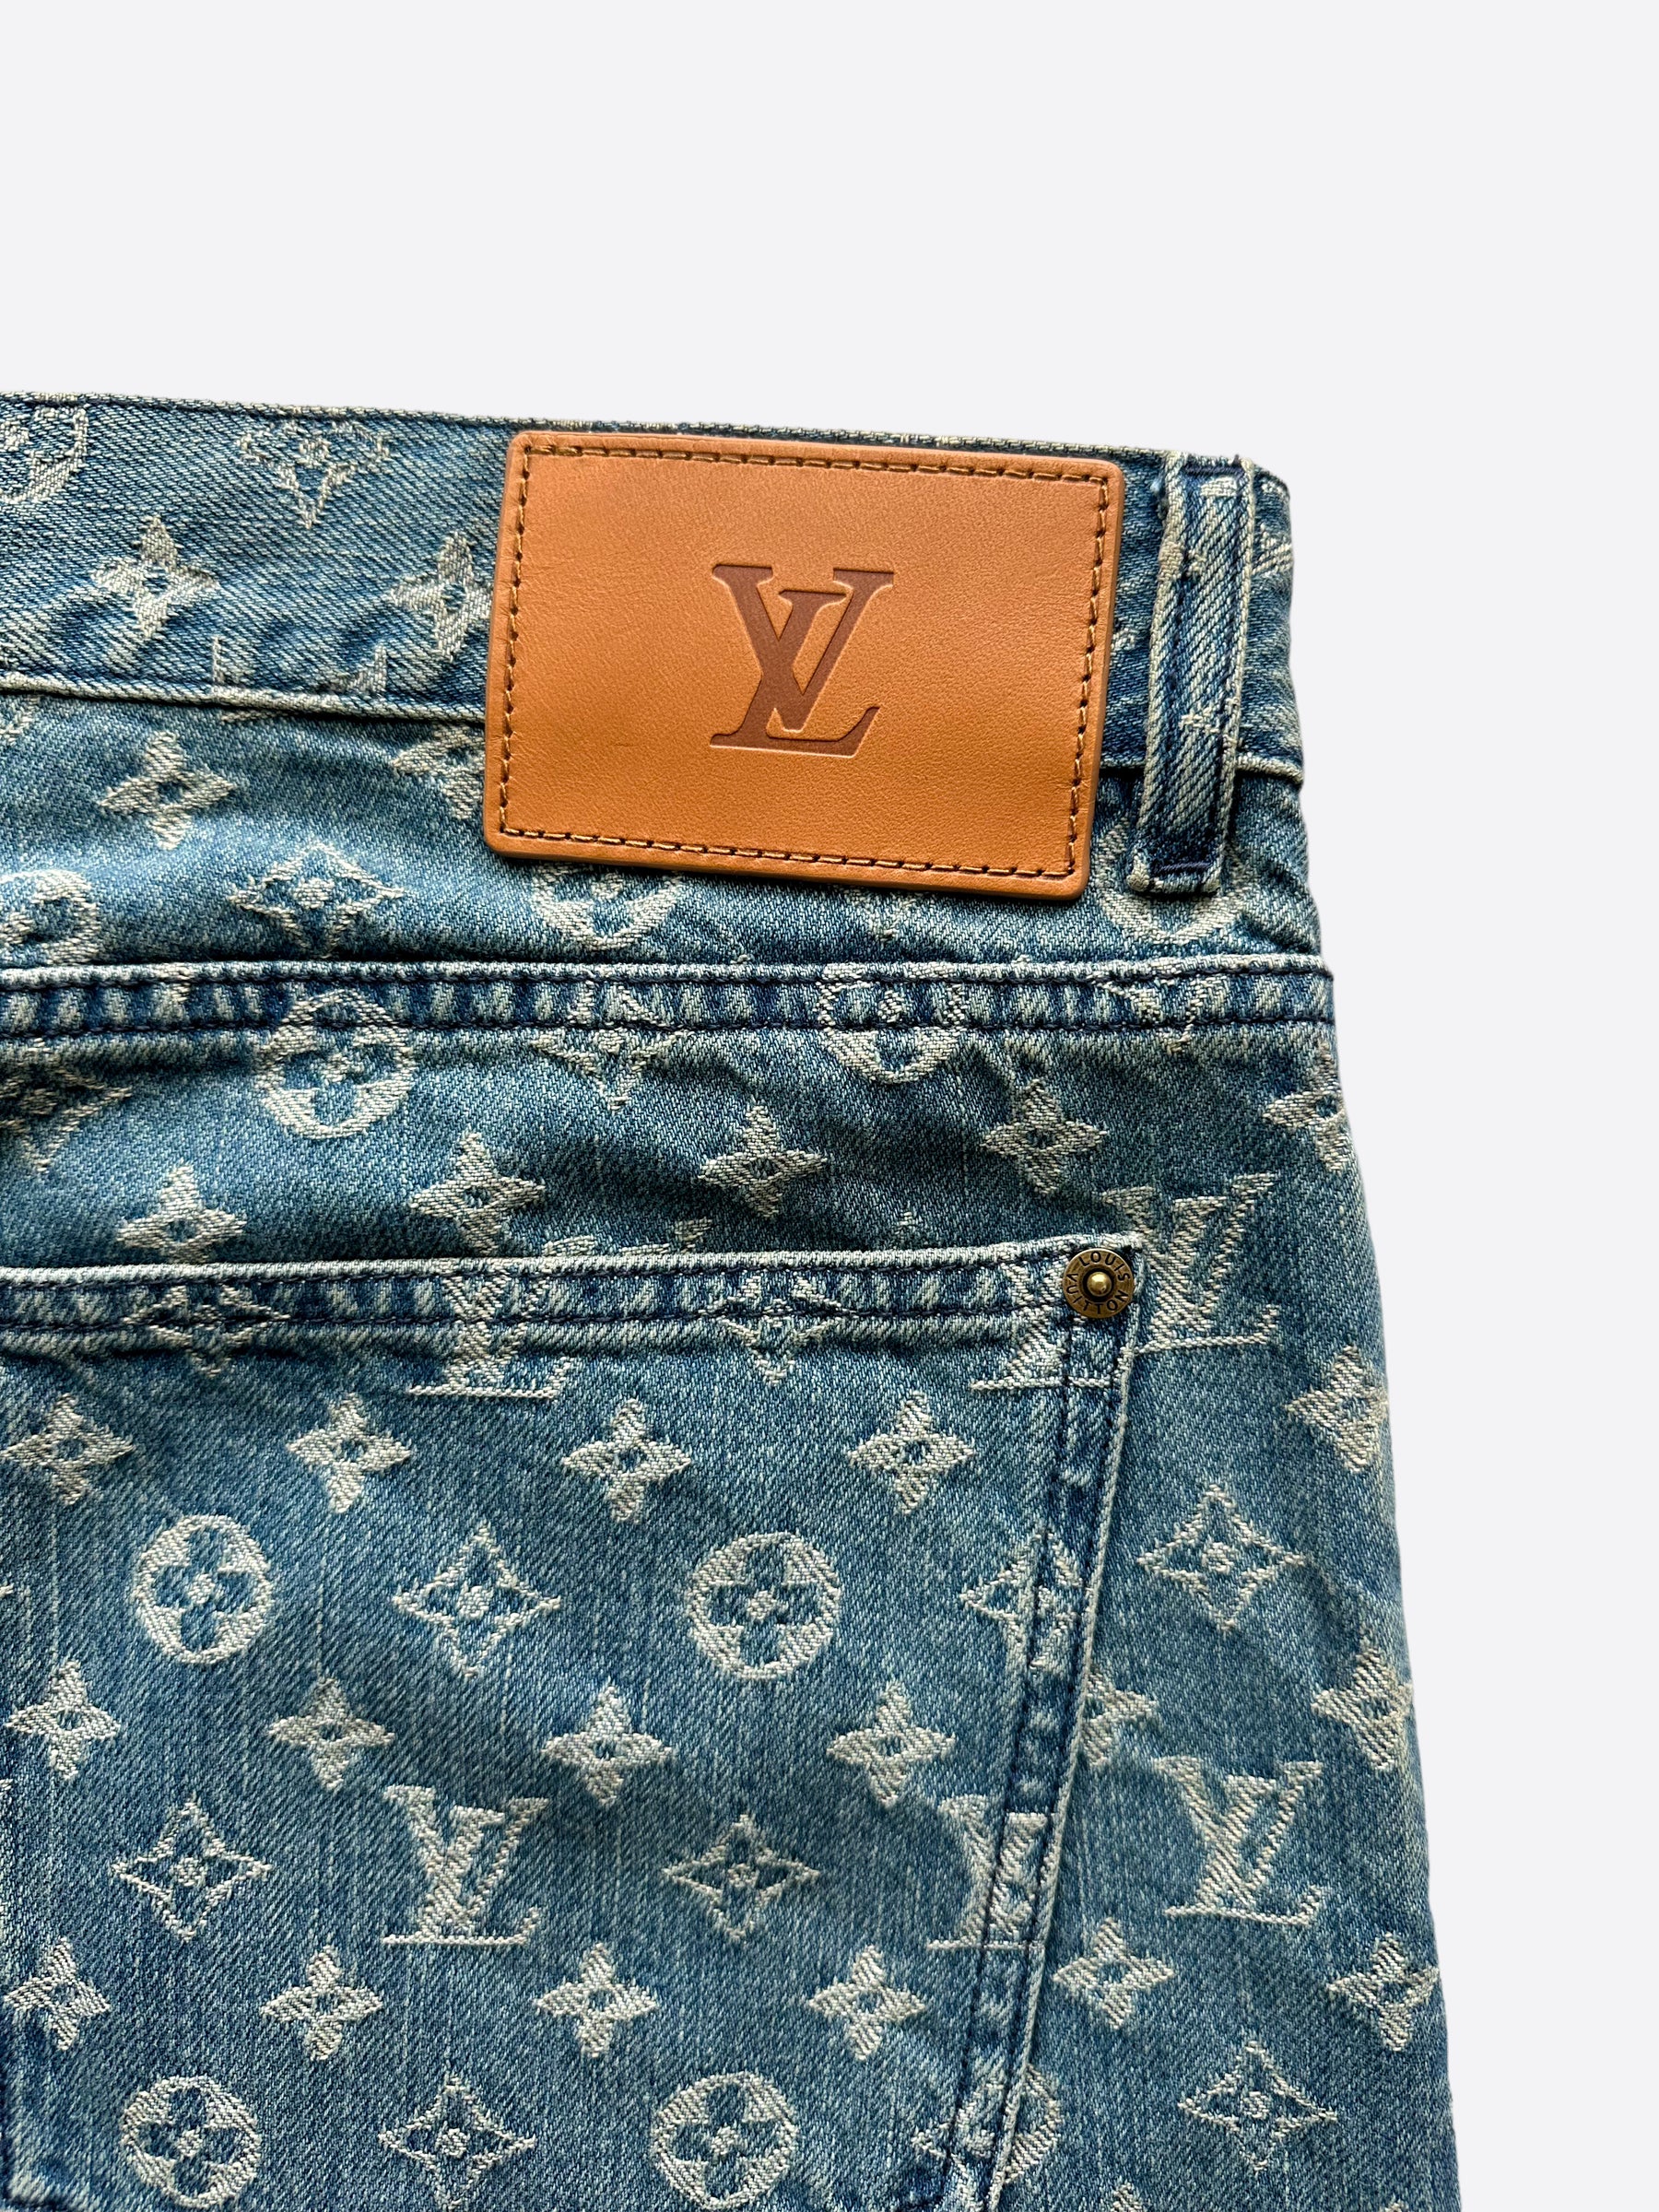 Supreme Jeans LVMH Streetwear Monogram, Louis Vuitton supreme, blue, angle,  logo png